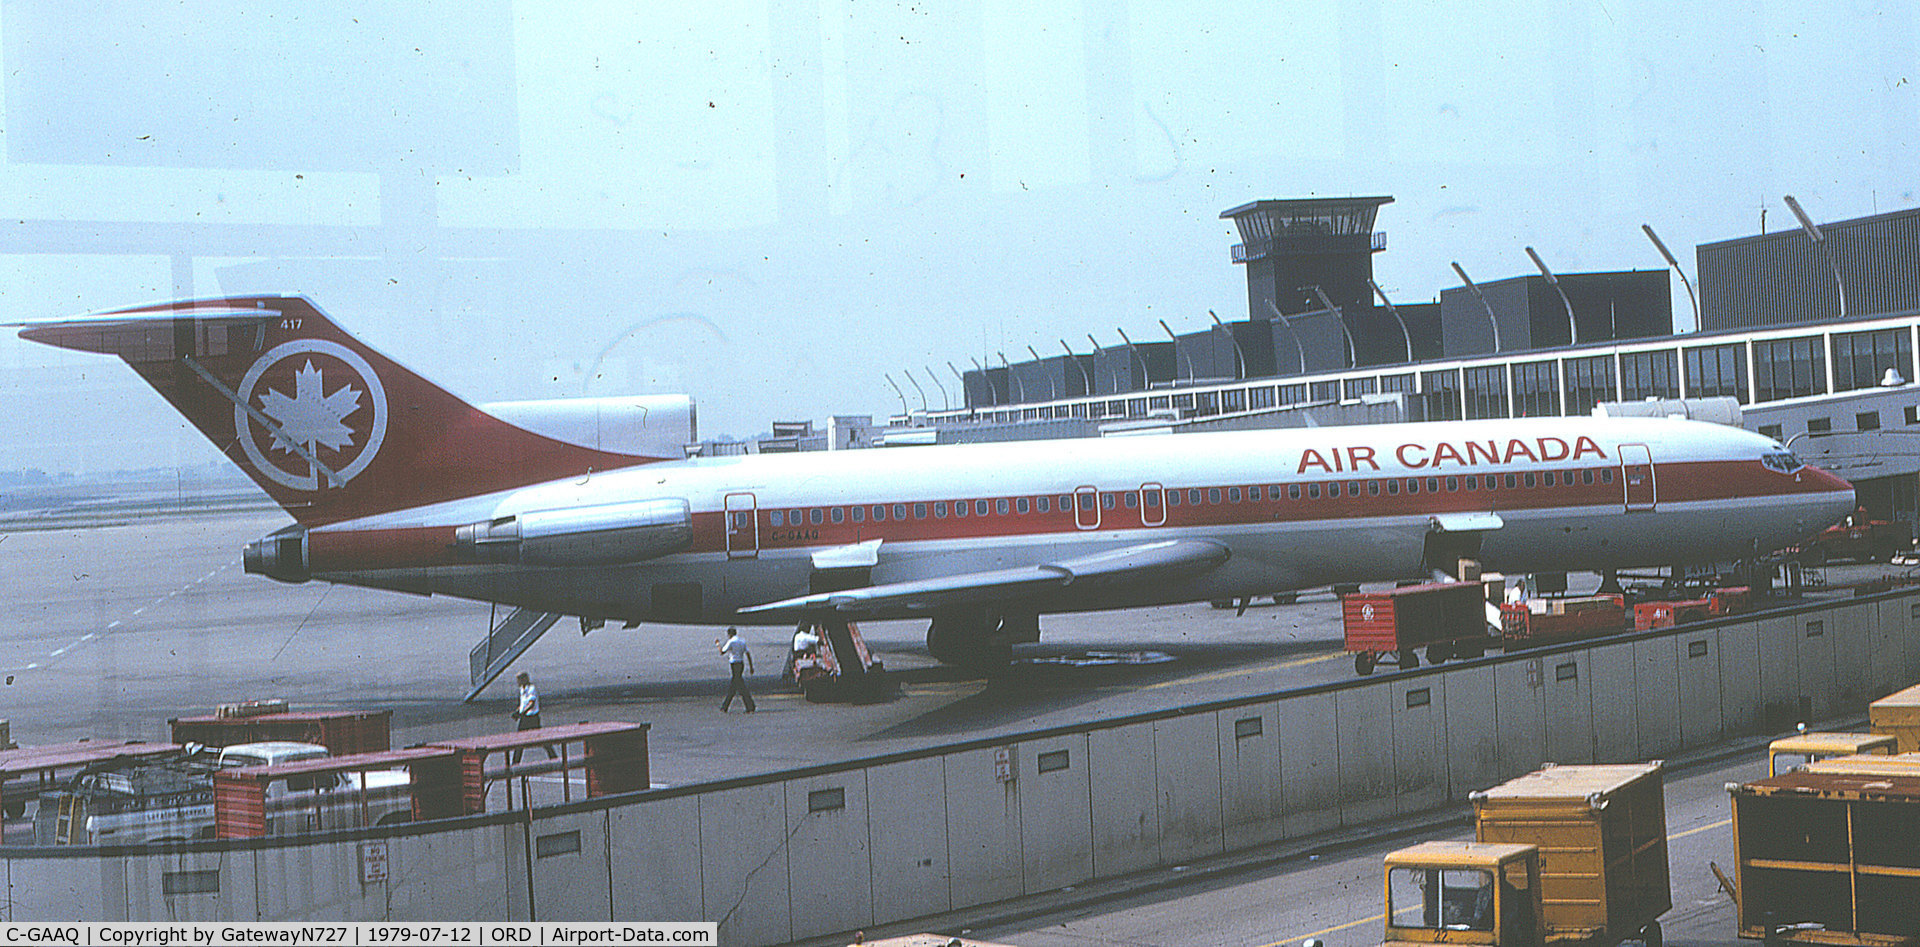 C-GAAQ, 1979 Boeing 727-233F C/N 21626, Fin # 417.